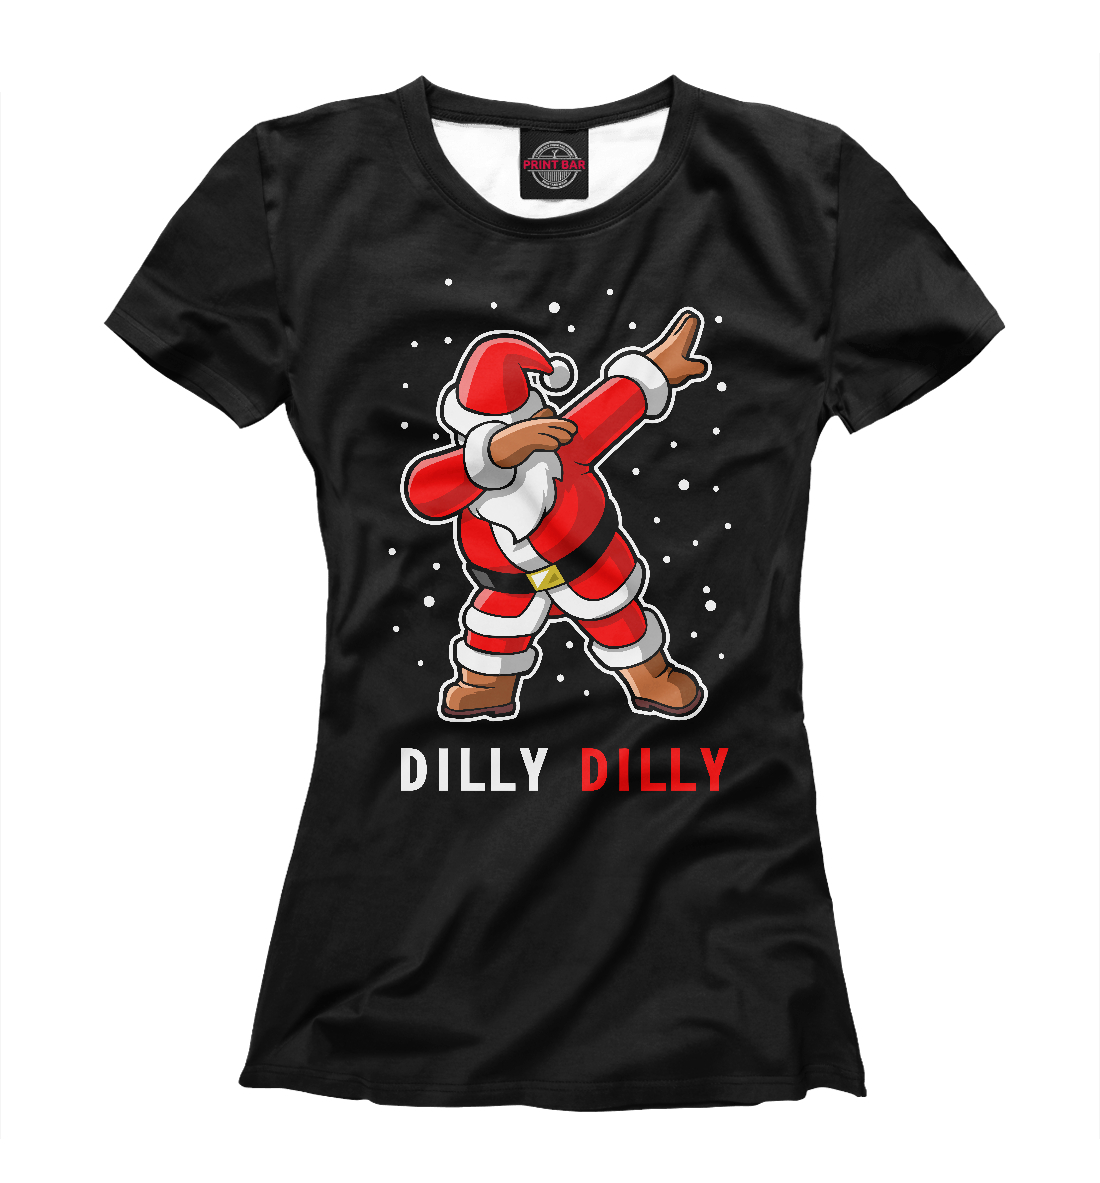 Футболка Dilly Dilly для женщин, артикул: DMZ-605043-fut-1mp